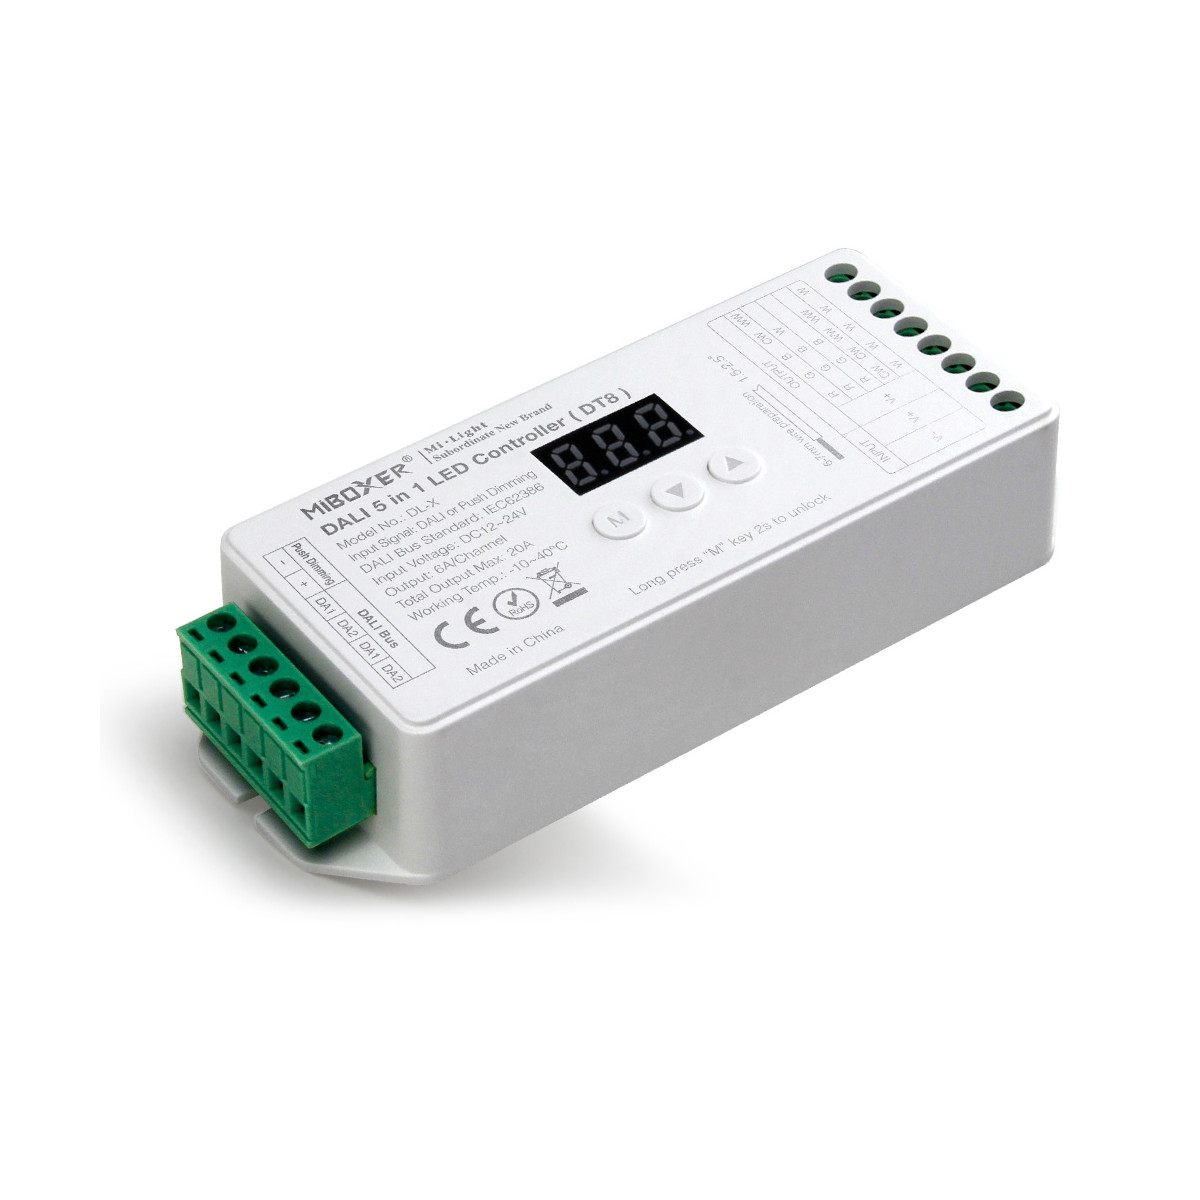 DALI 5 in 1 LED Controller (DT8) - 12-24V DC